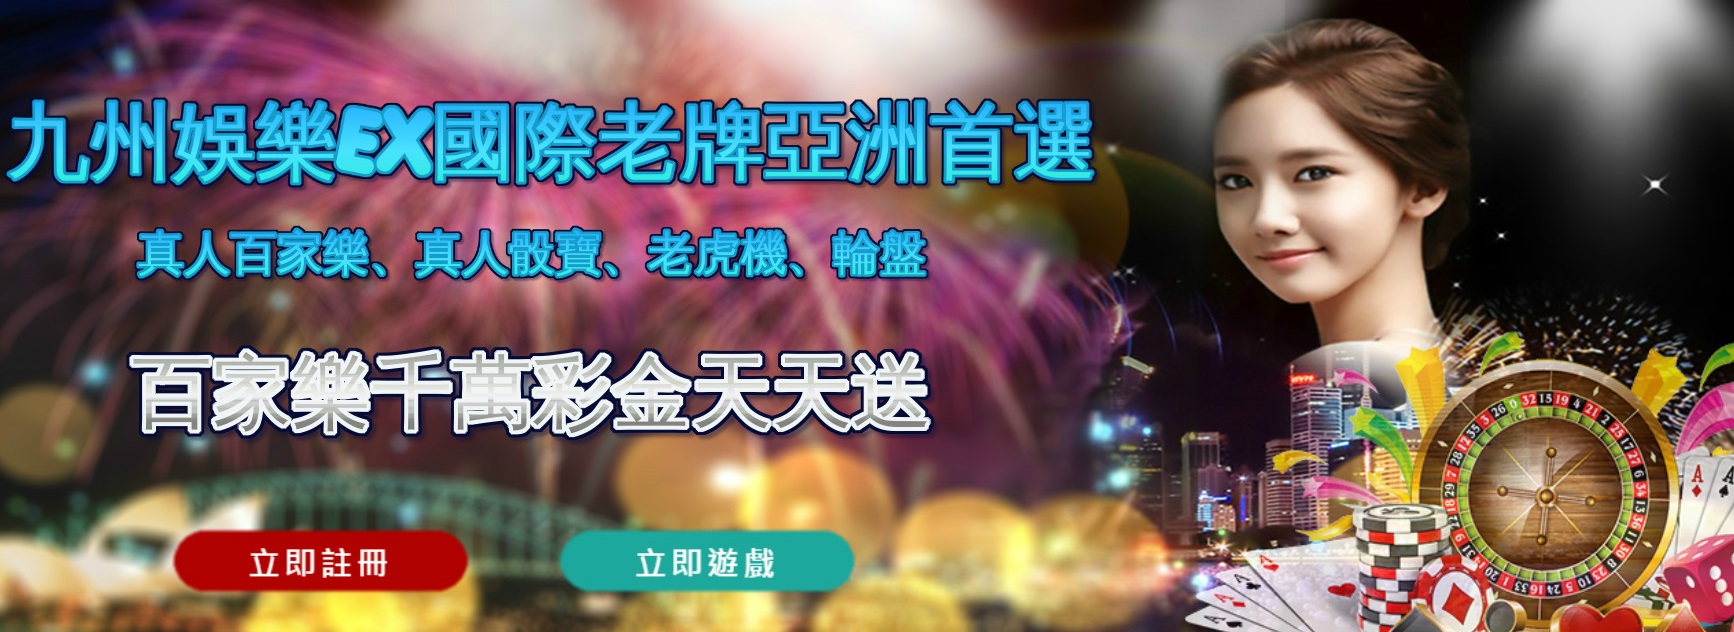 台灣線上娛樂城唯一合法娛樂平台多款遊戲24H任你賺